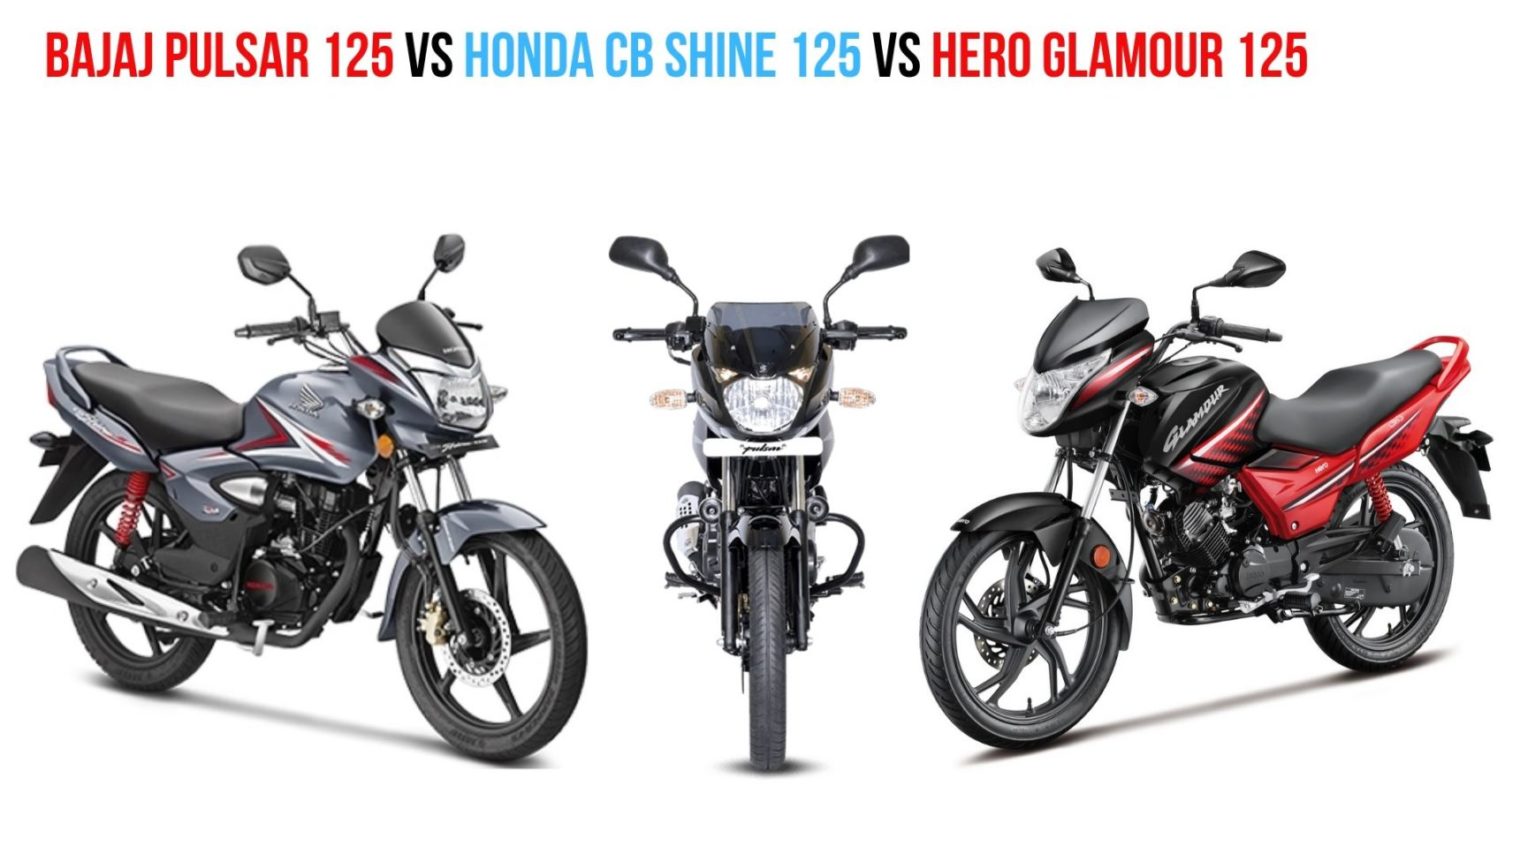 Bajaj Pulsar 125 Vs Honda Cb Shine 125 Vs Hero Glamour 125 Specs Comparison